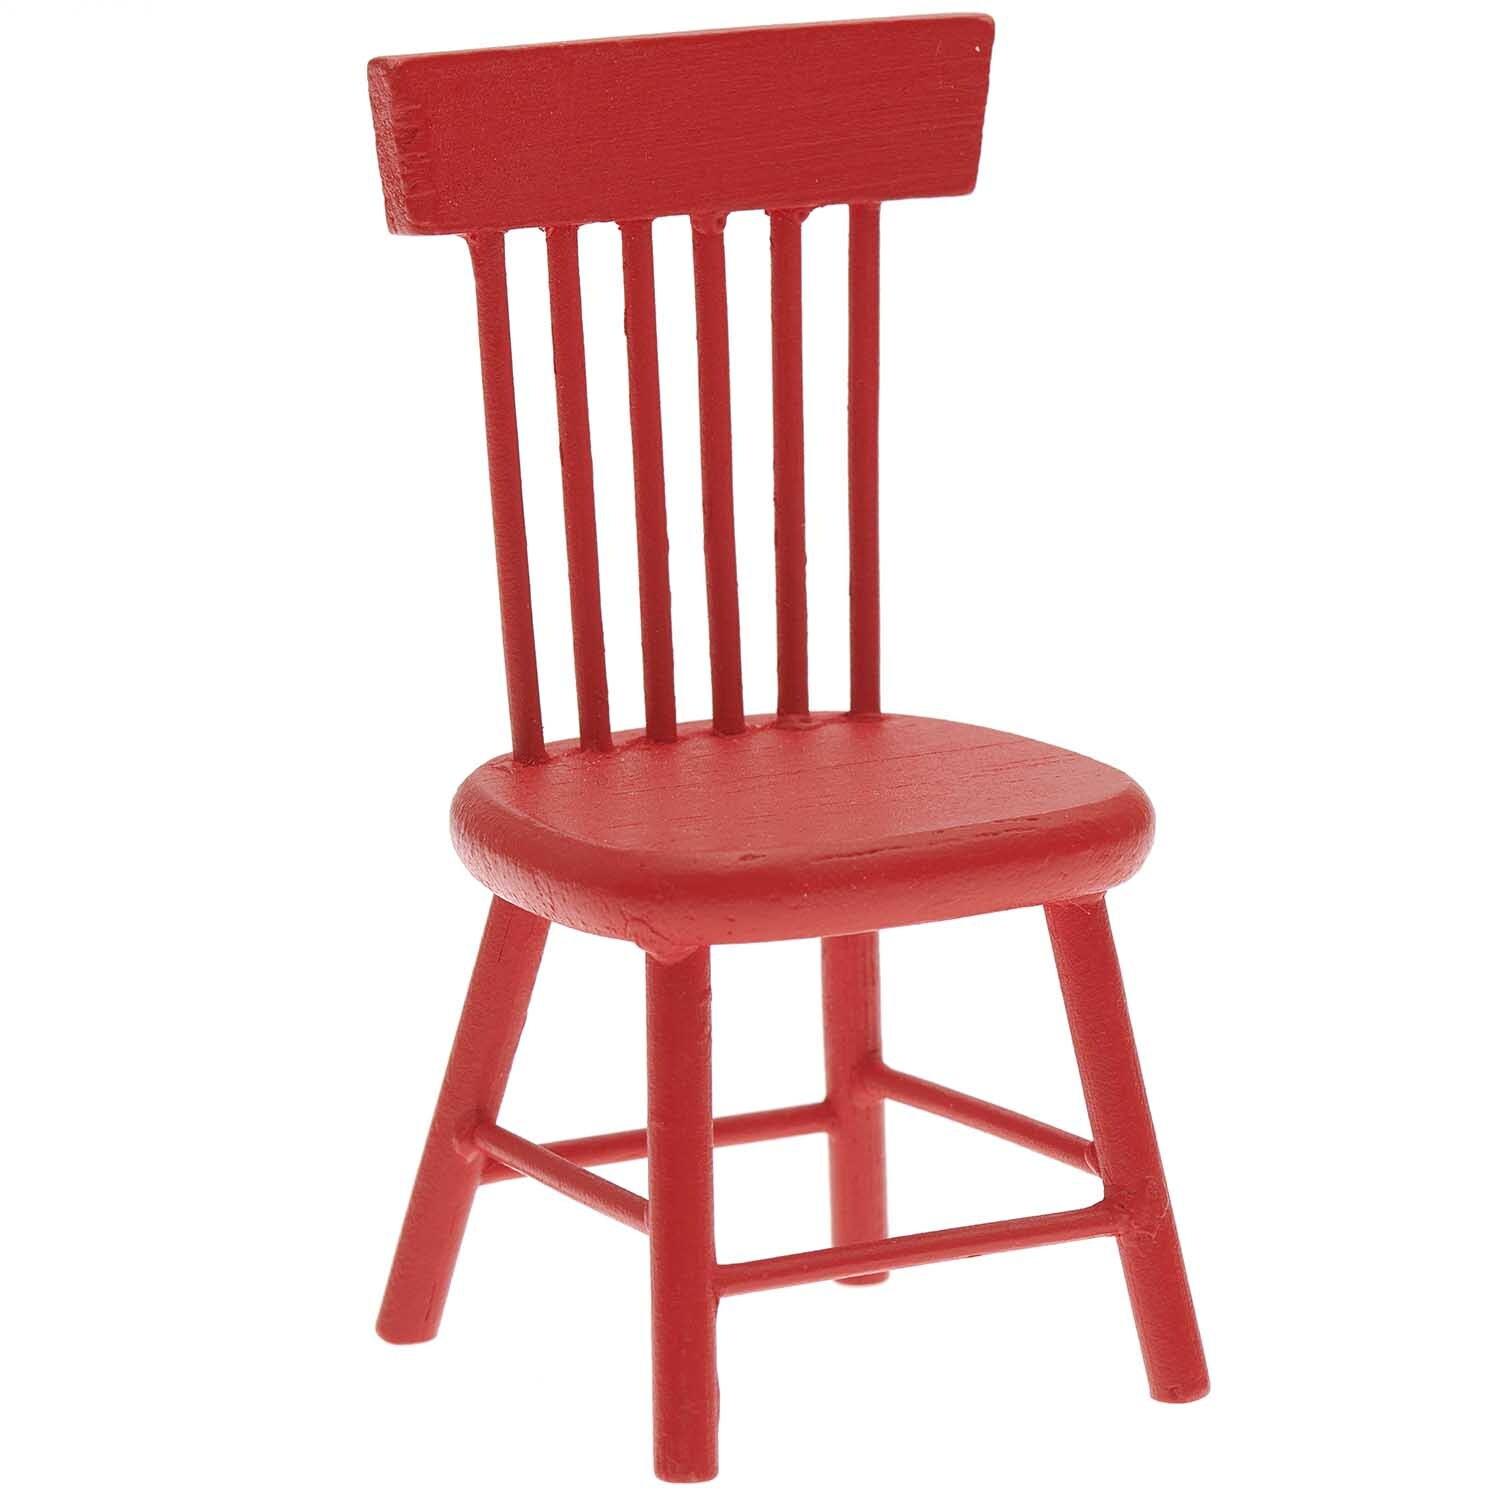 Miniatur Stuhl 4,5x4x8,5cm